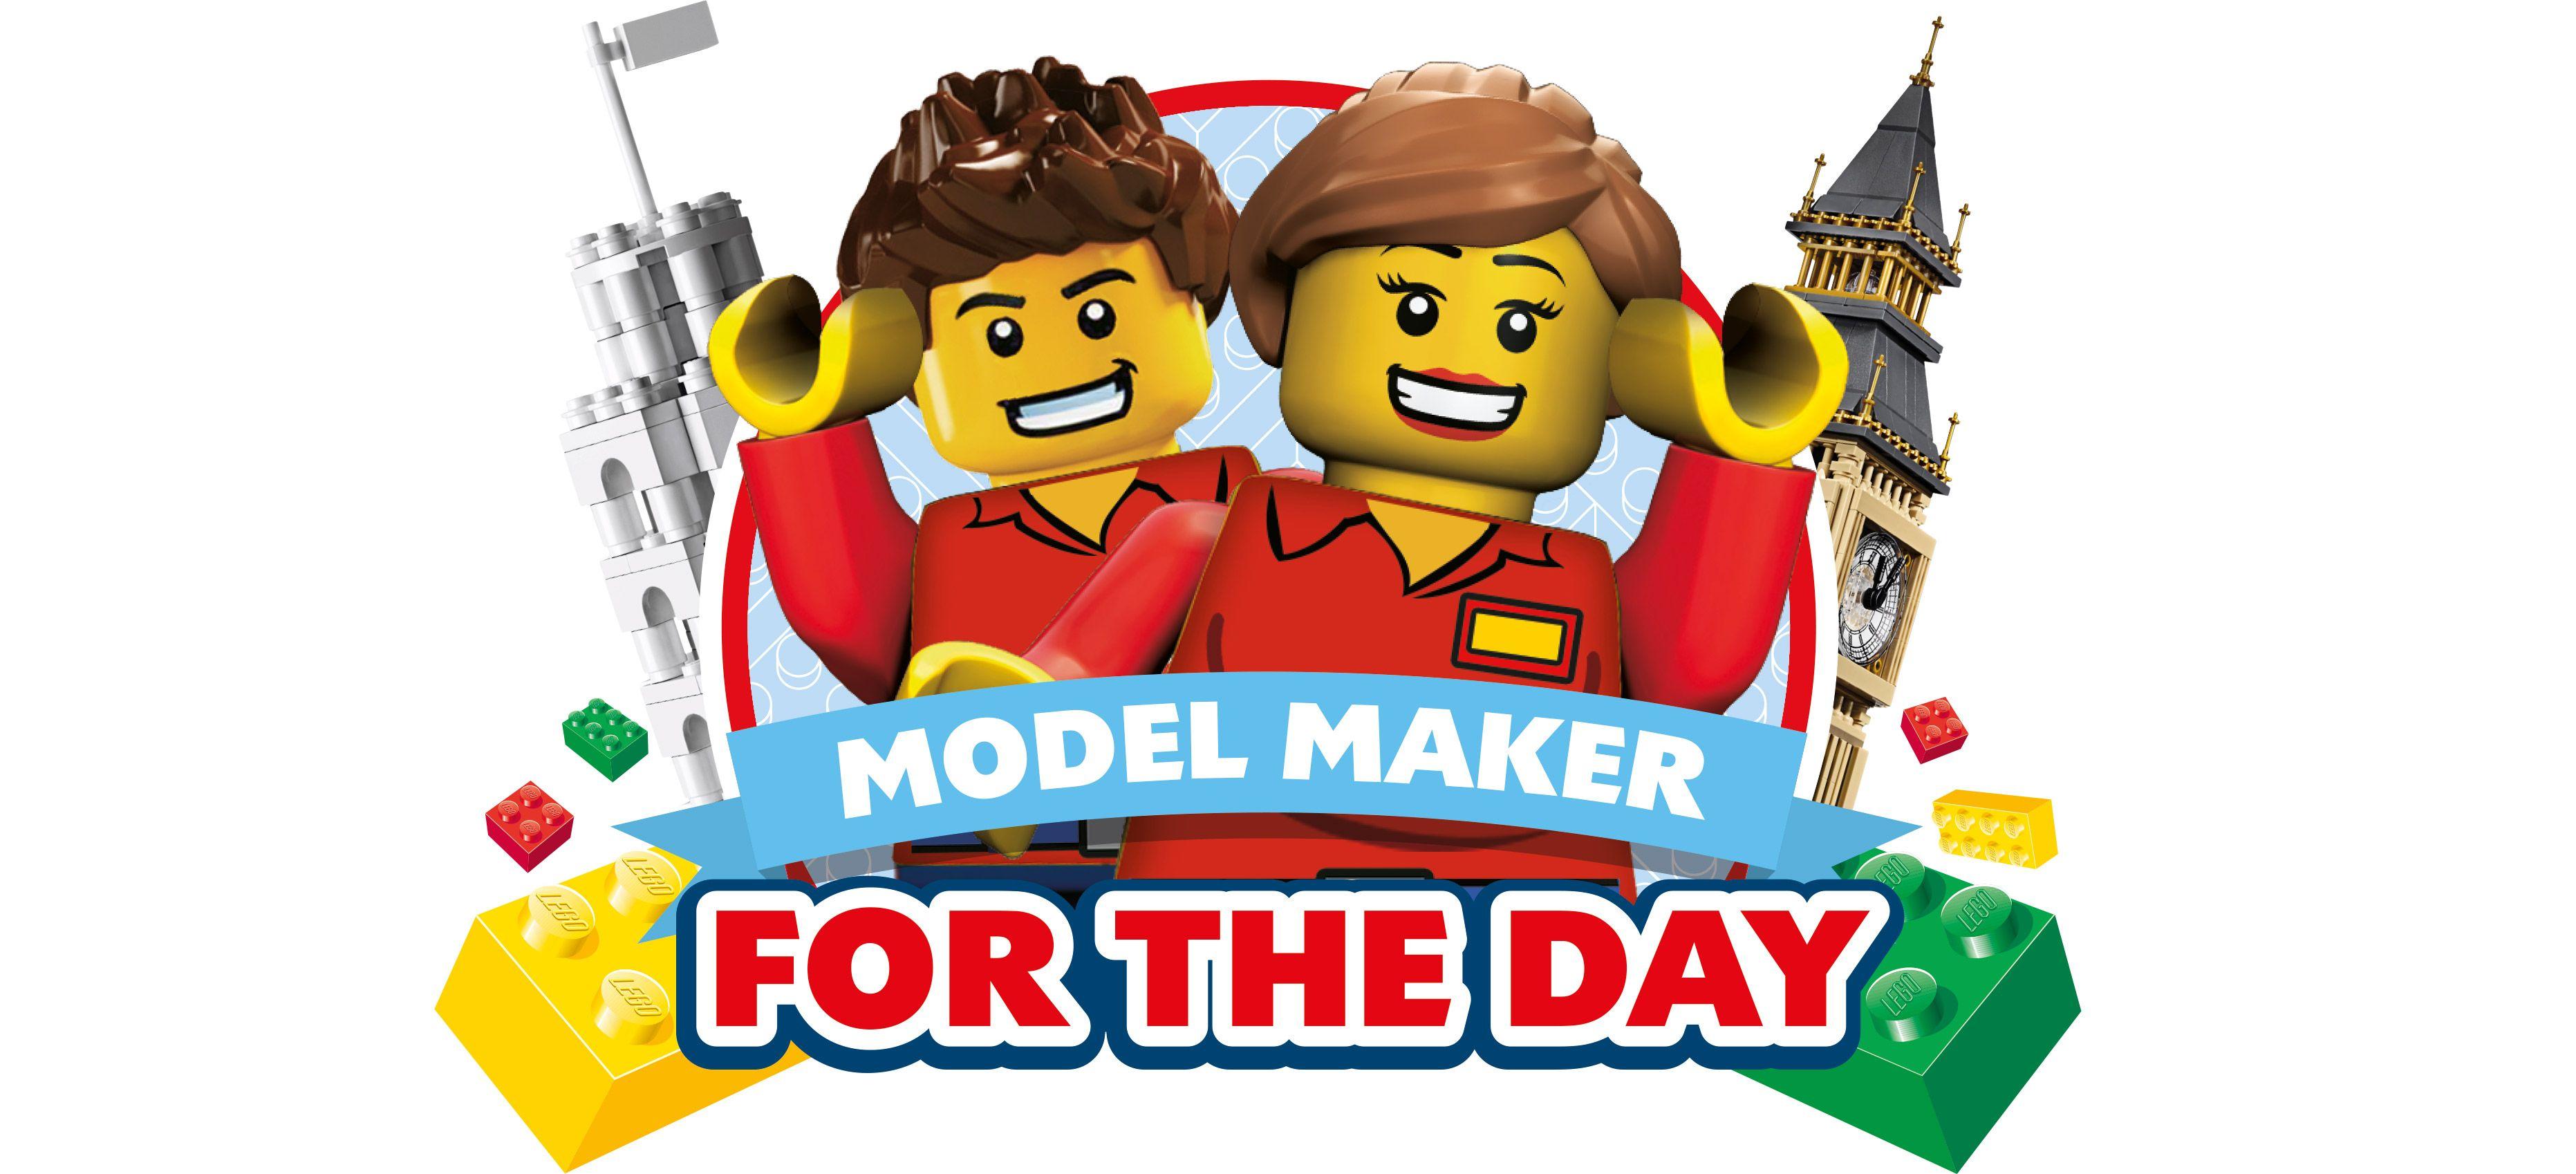 Legoland Logo - Model Maker For The Day - The LEGOLAND® Windsor Resort